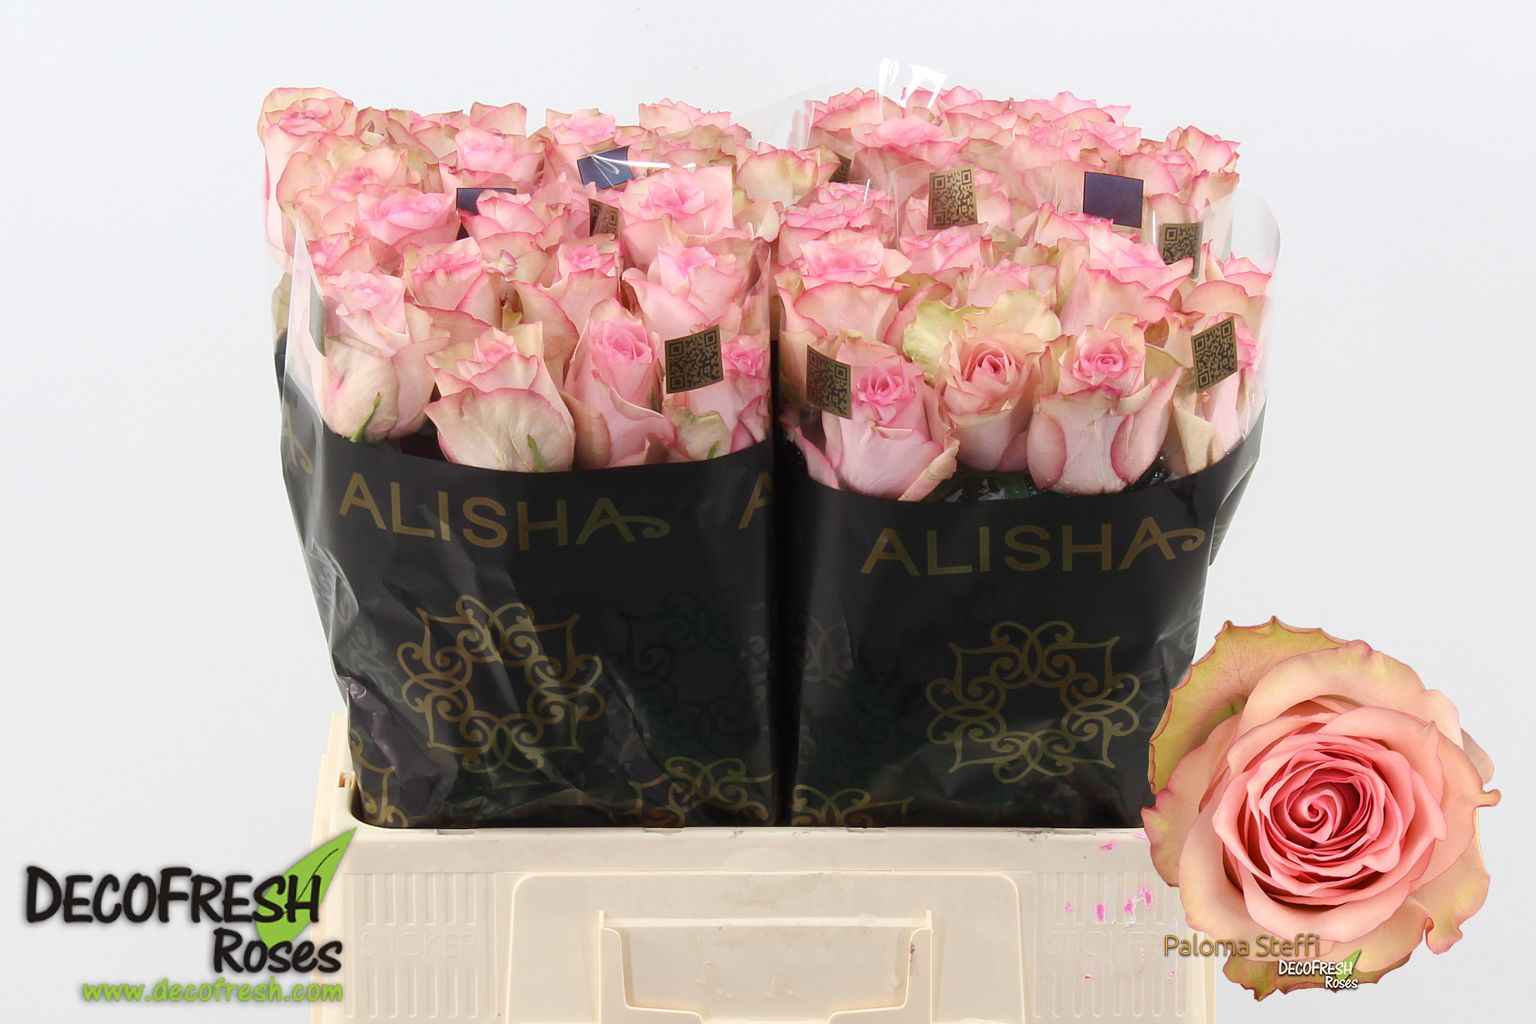 Срезанные цветы оптом Rosa la paloma steffi от 60шт из Голландии с доставкой по России